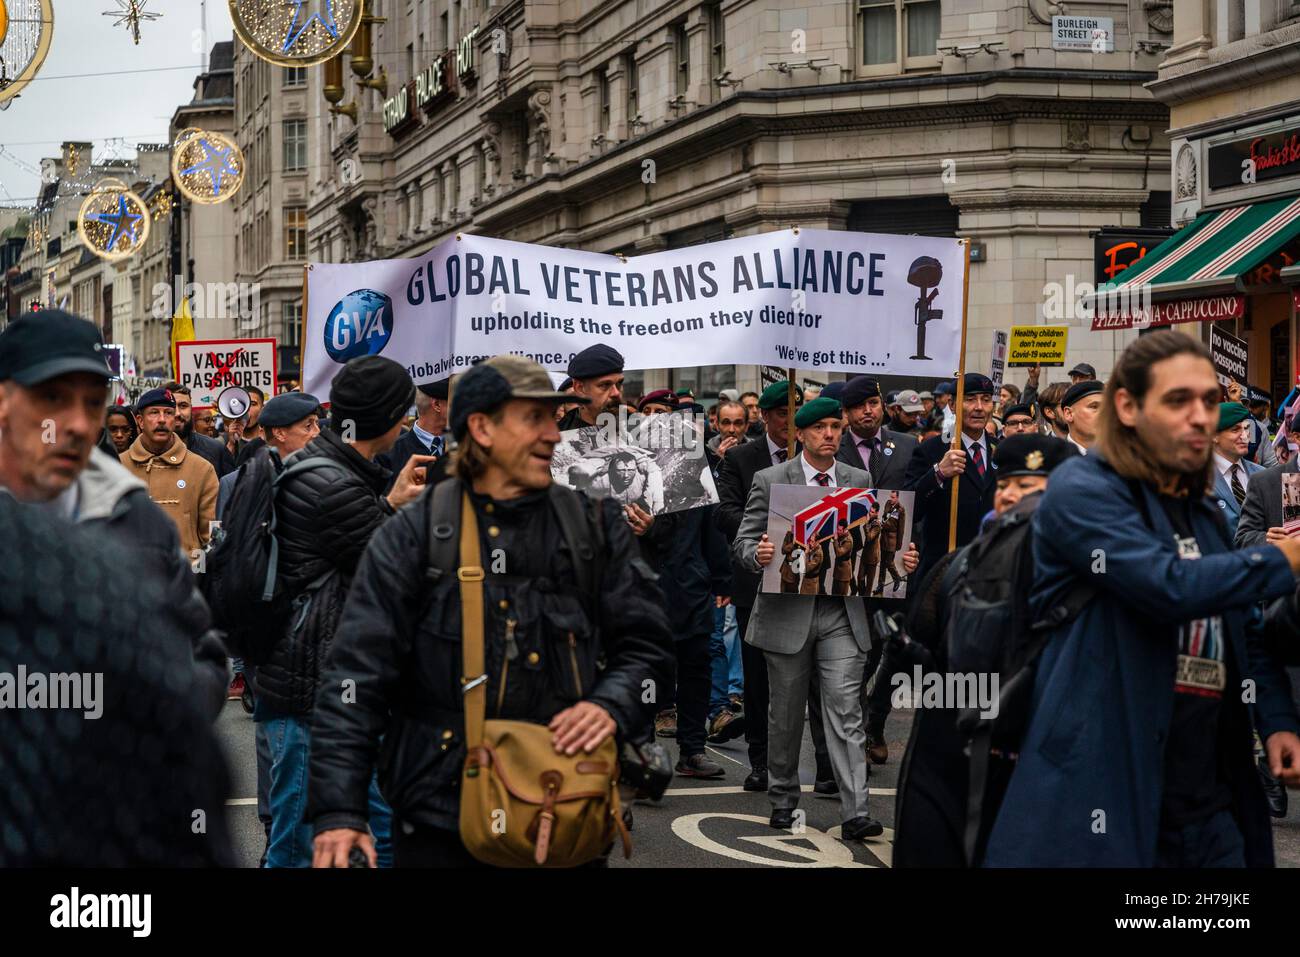 Alliance mondiale des vétérans à la manifestation anti-vaccin, Londres, Angleterre, Royaume-Uni, 20/11/2021 Banque D'Images